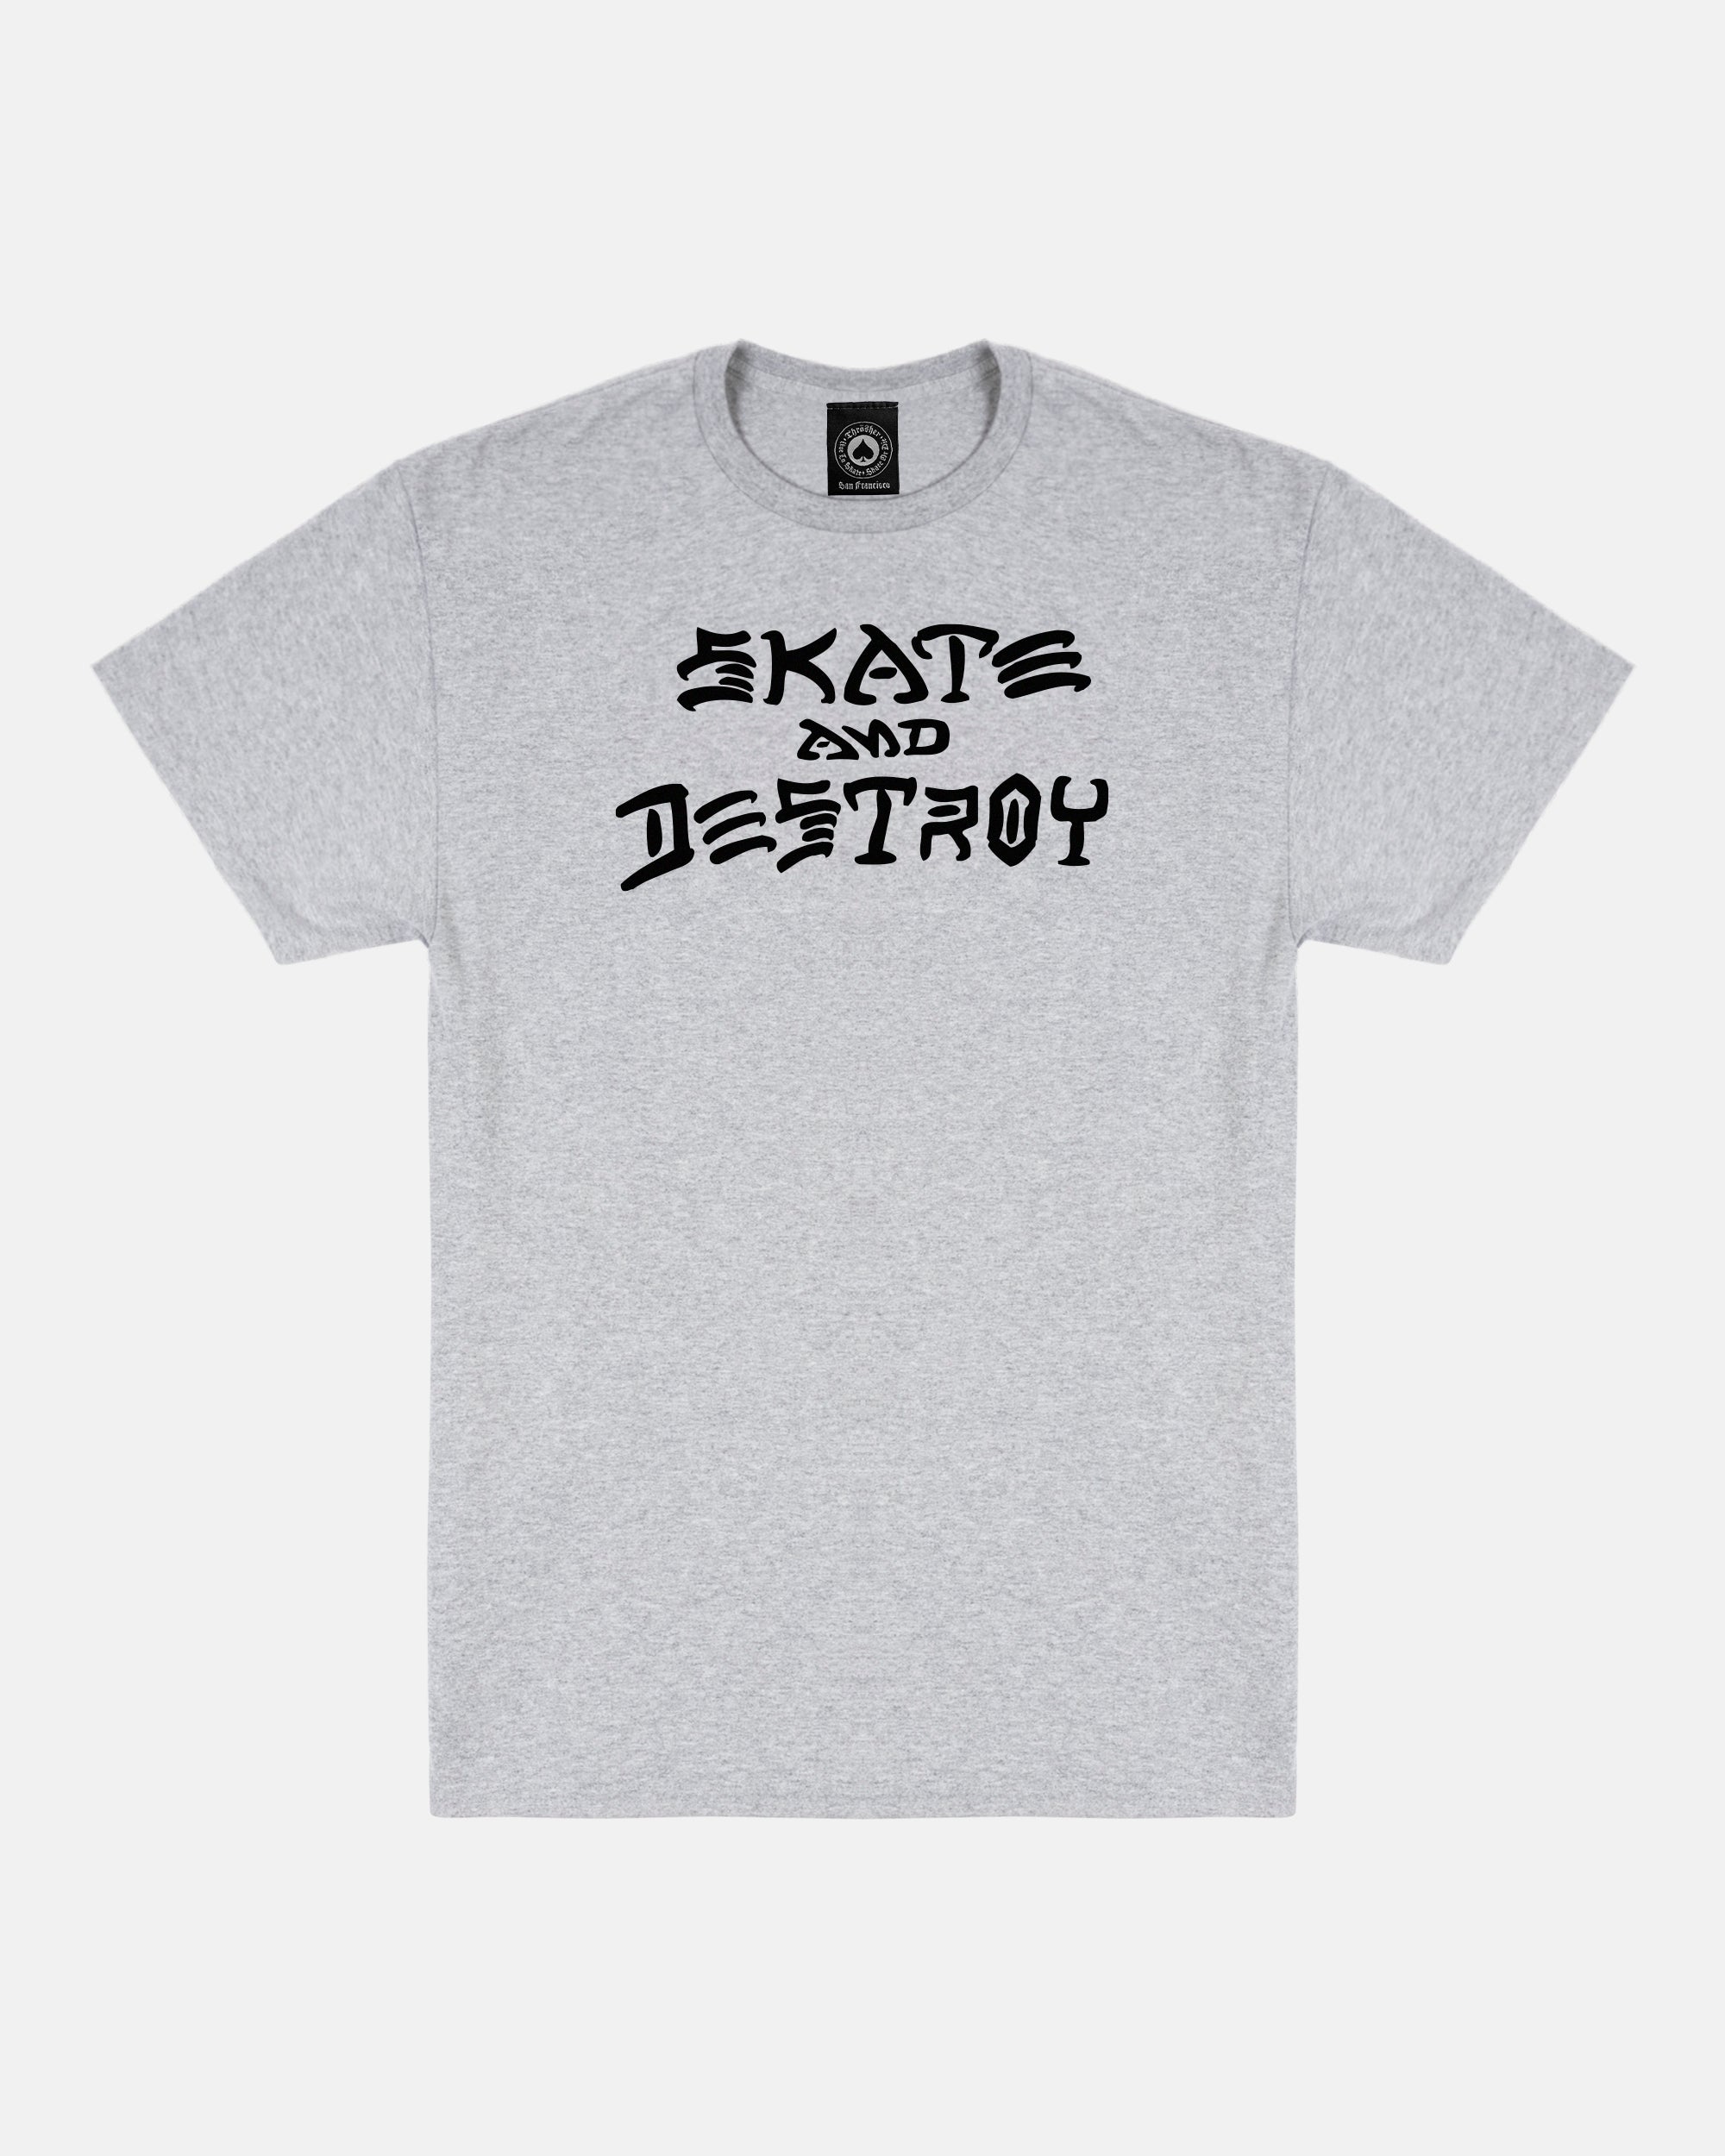 Official Skateboard T-Shirt